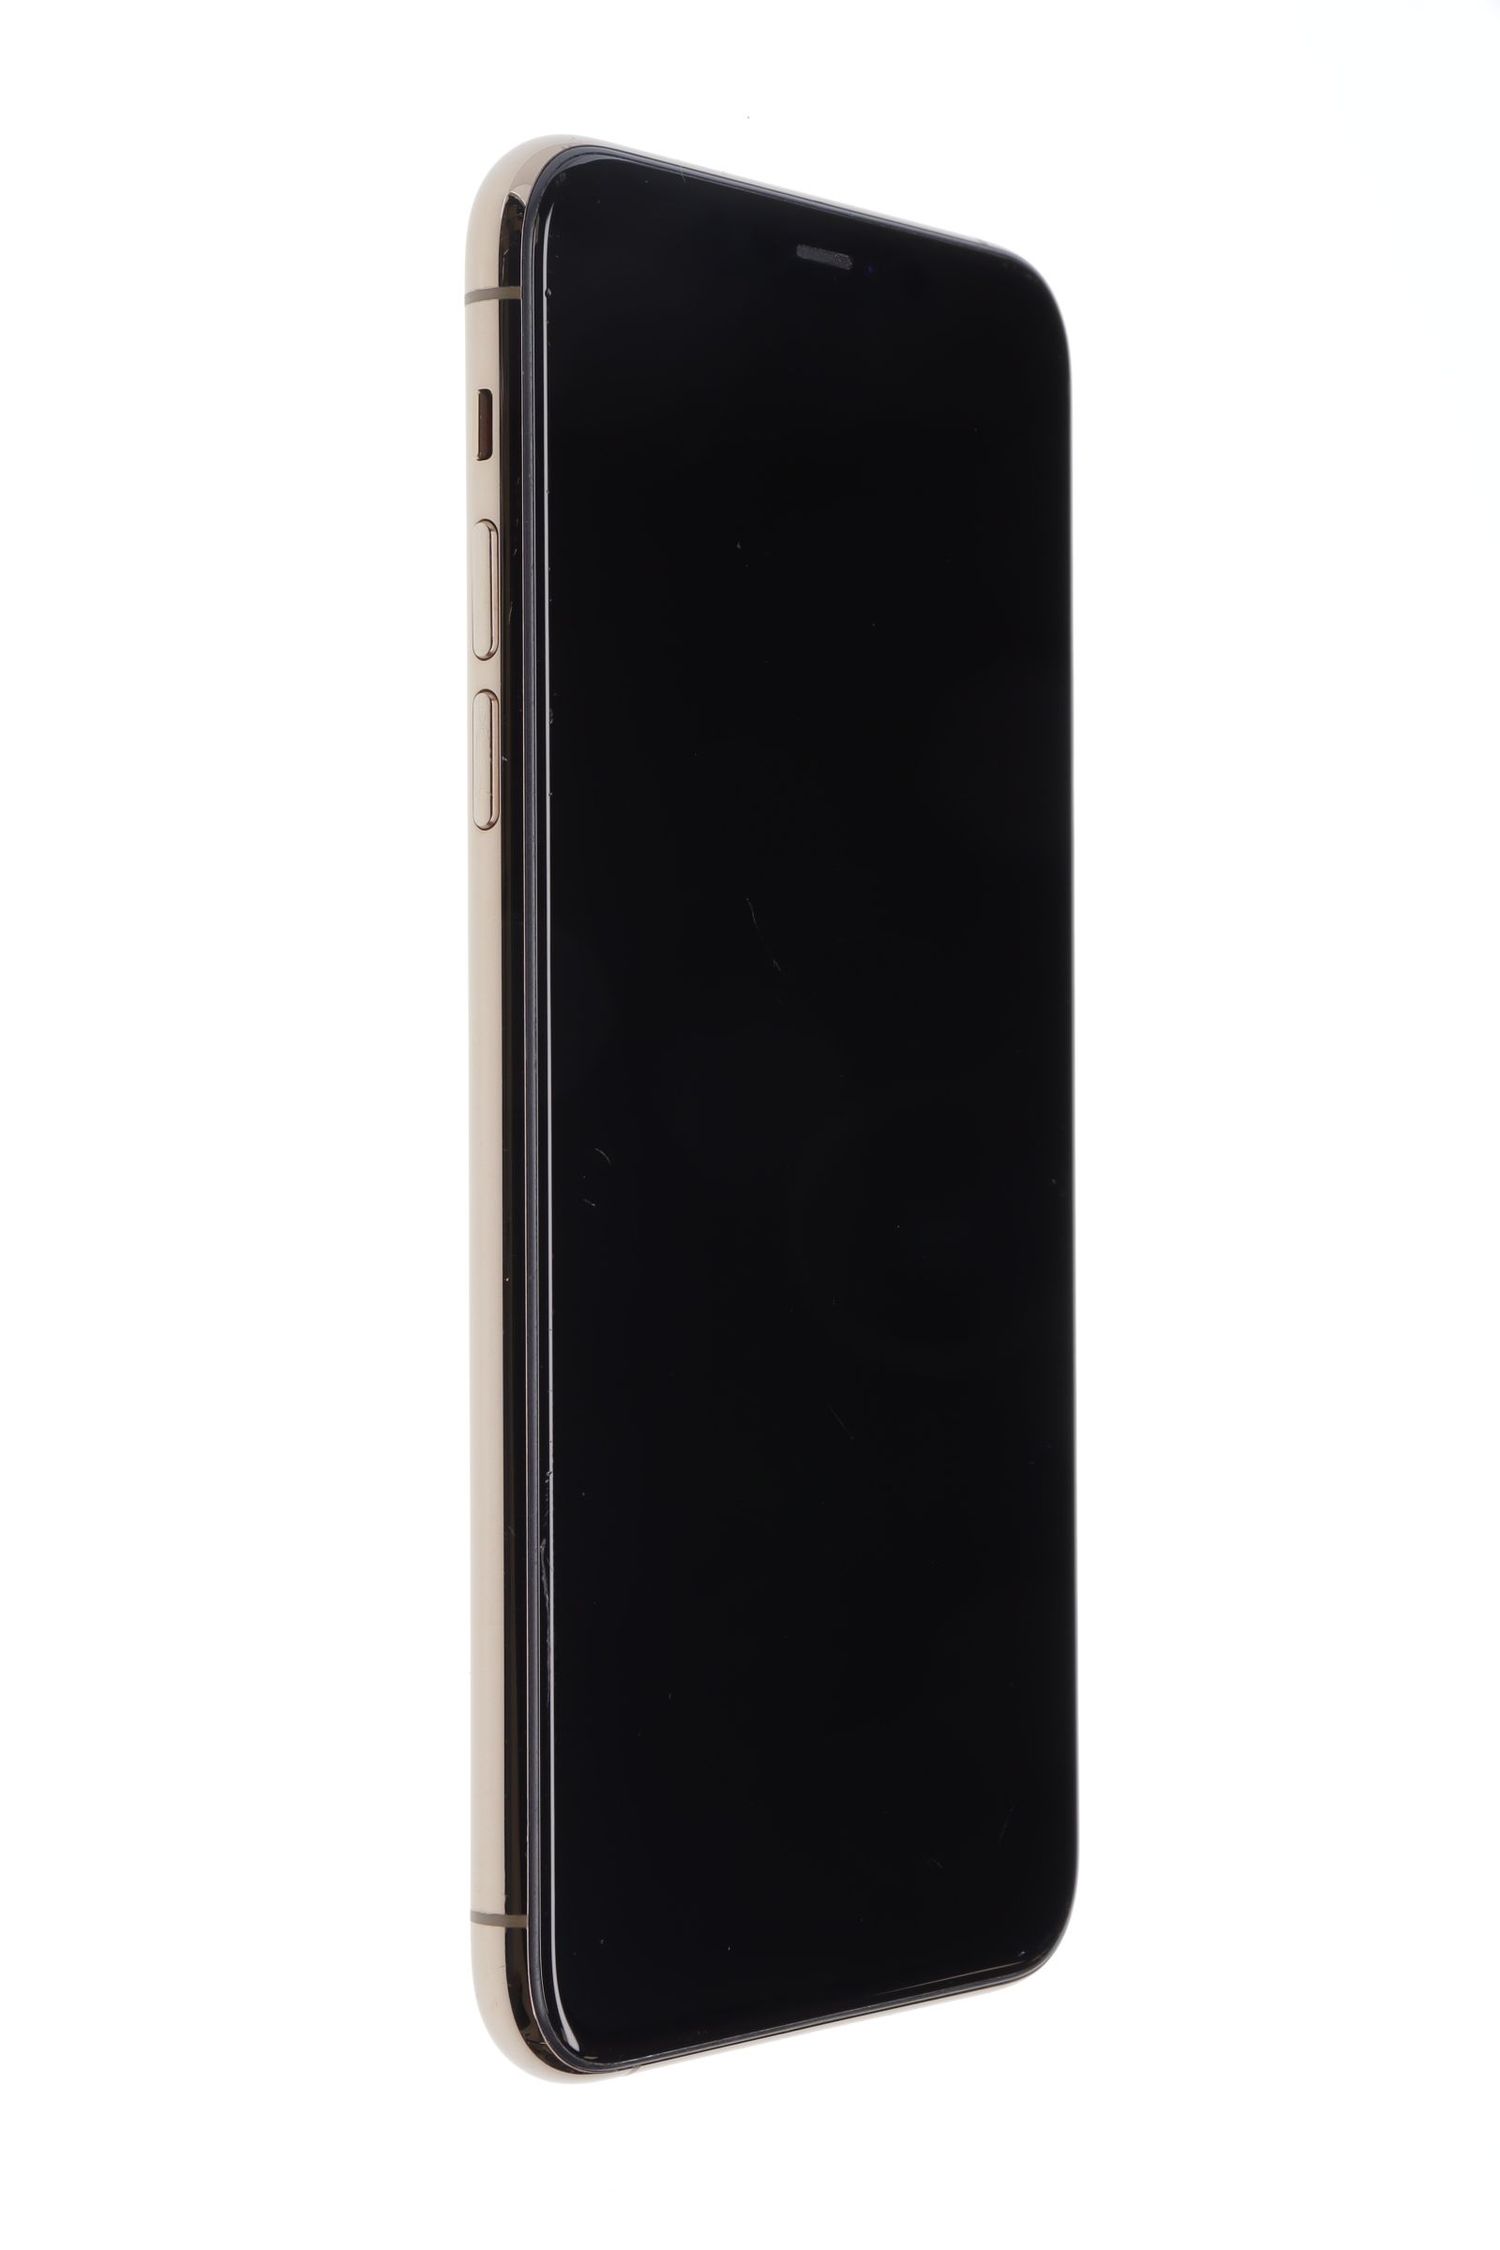 Κινητό τηλέφωνο Apple iPhone 11 Pro Max, Gold, 64 GB, Foarte Bun